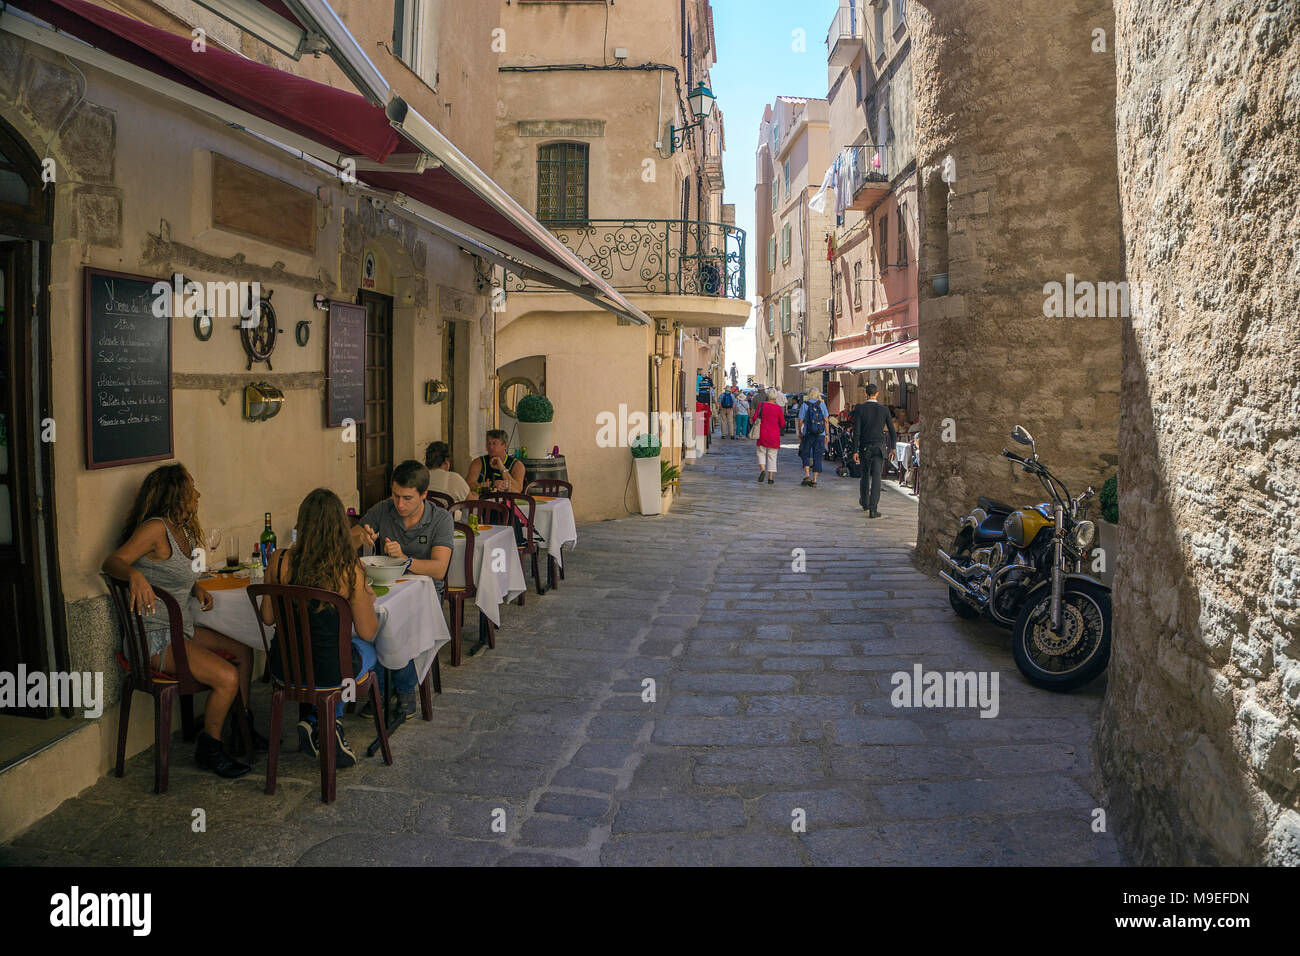 Bar et restaurant dans une ruelle étroite, la vieille ville de Bonifacio, Corse, France, Europe, Méditerranée Banque D'Images